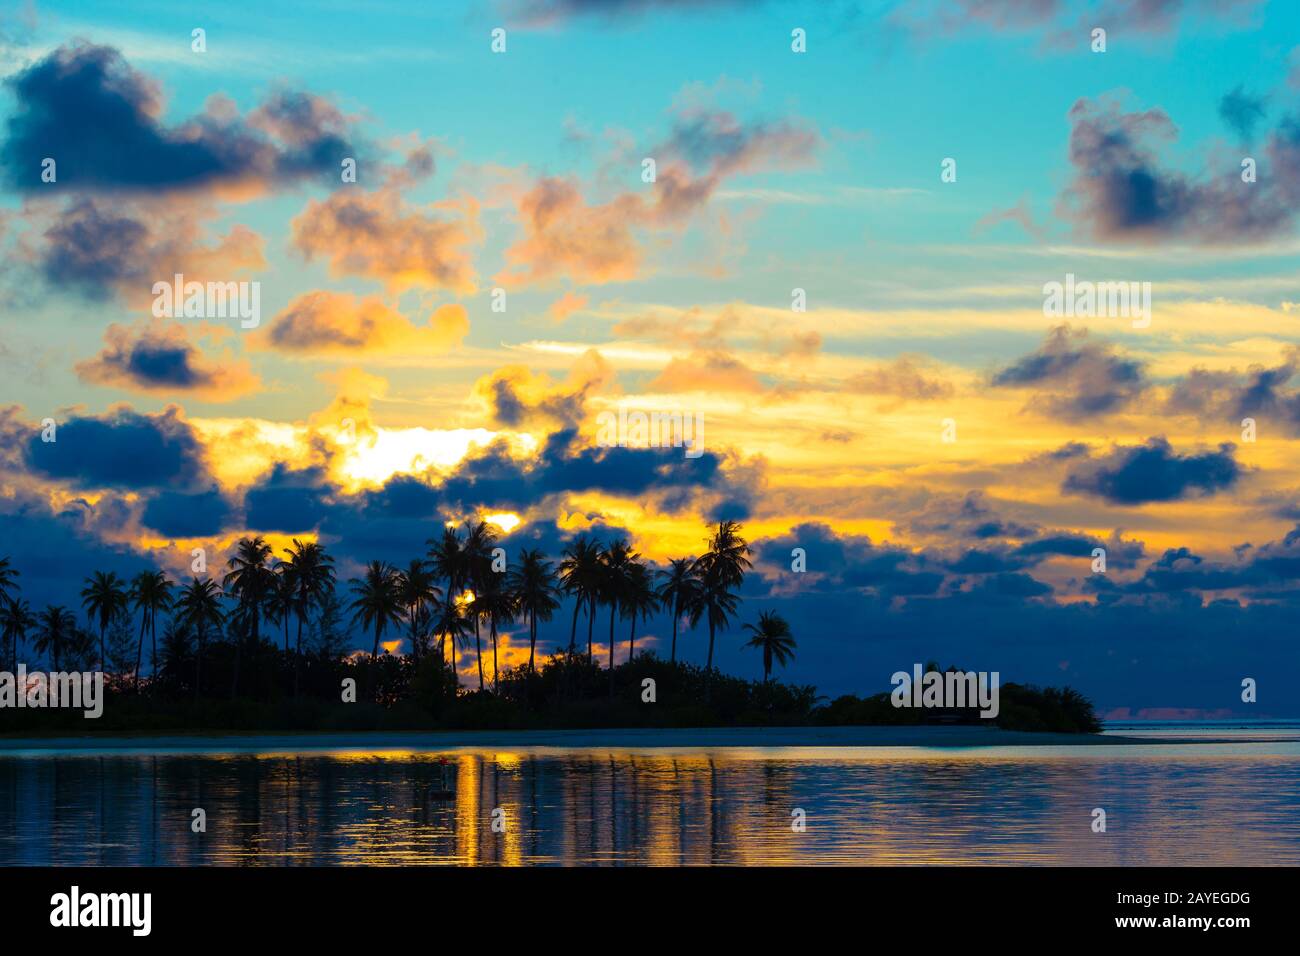 Dunkle Silhouetten von Palmen und erstaunliche bewölkten Himmel bei Sonnenuntergang Stockfoto